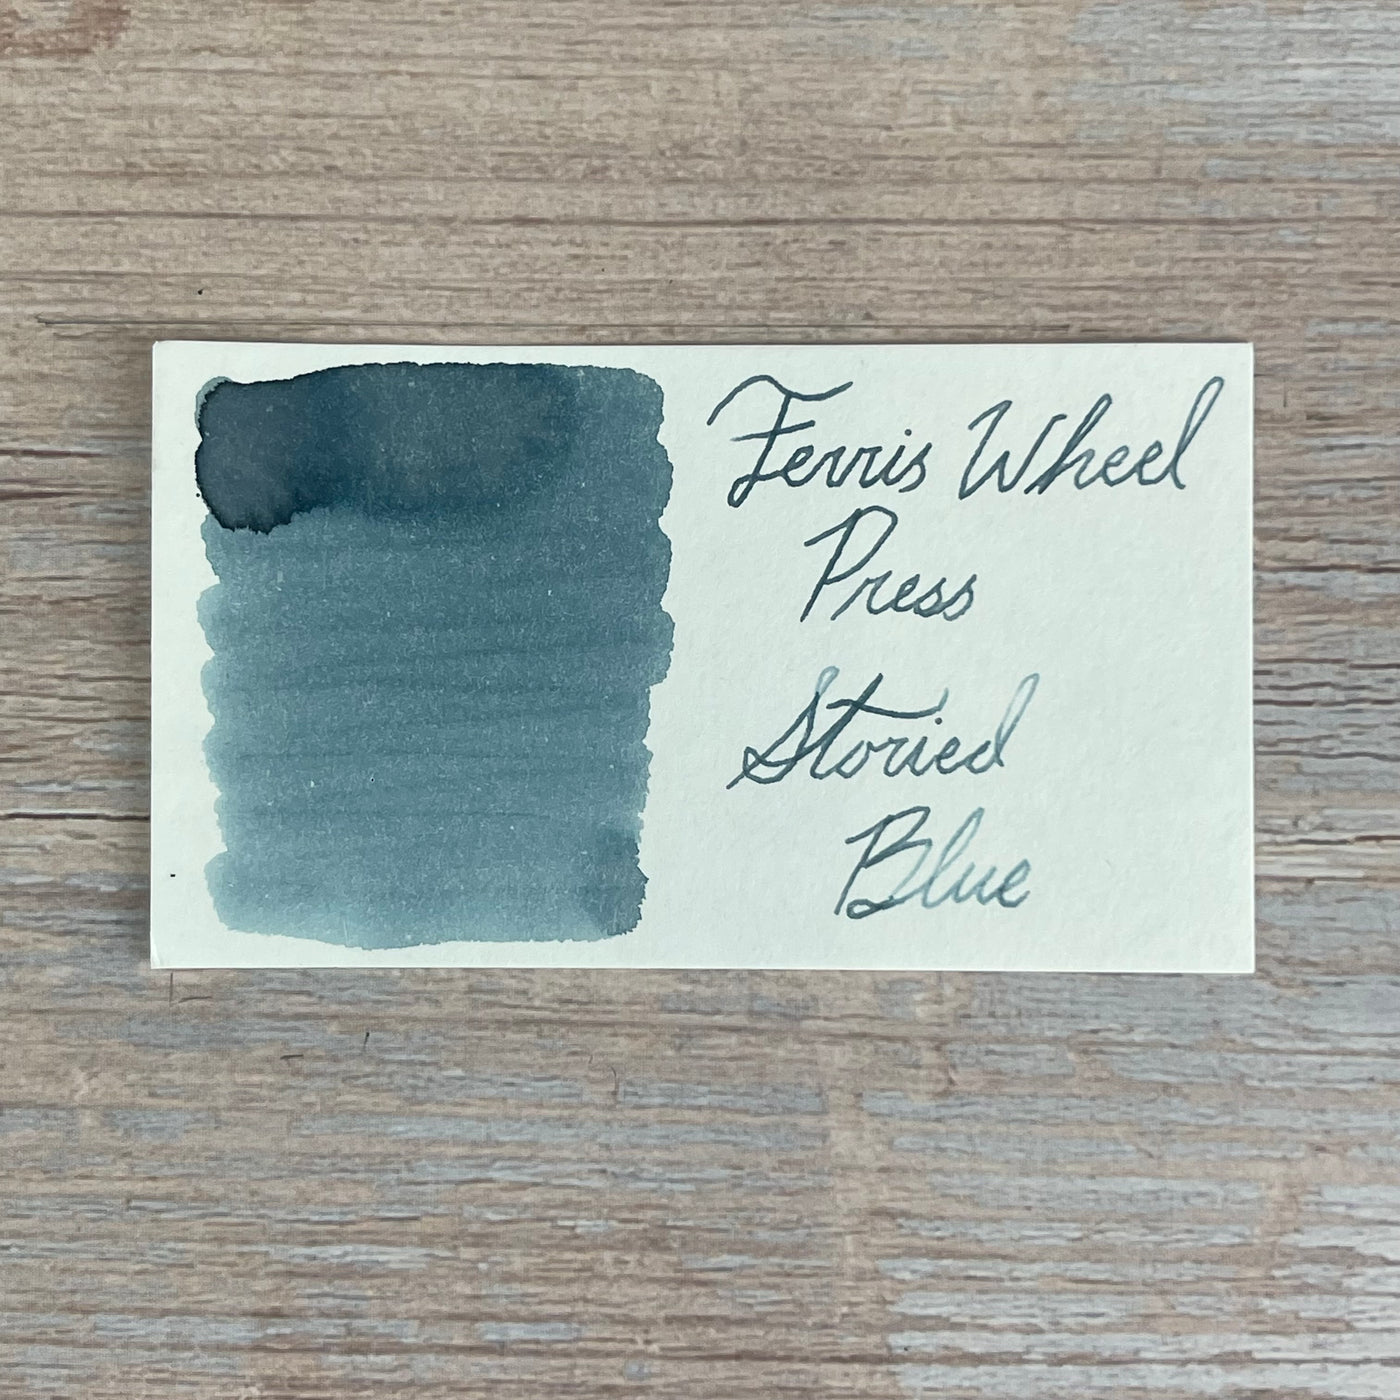 Ferris Wheel Press 38ml bottled Ink - Storied Blue